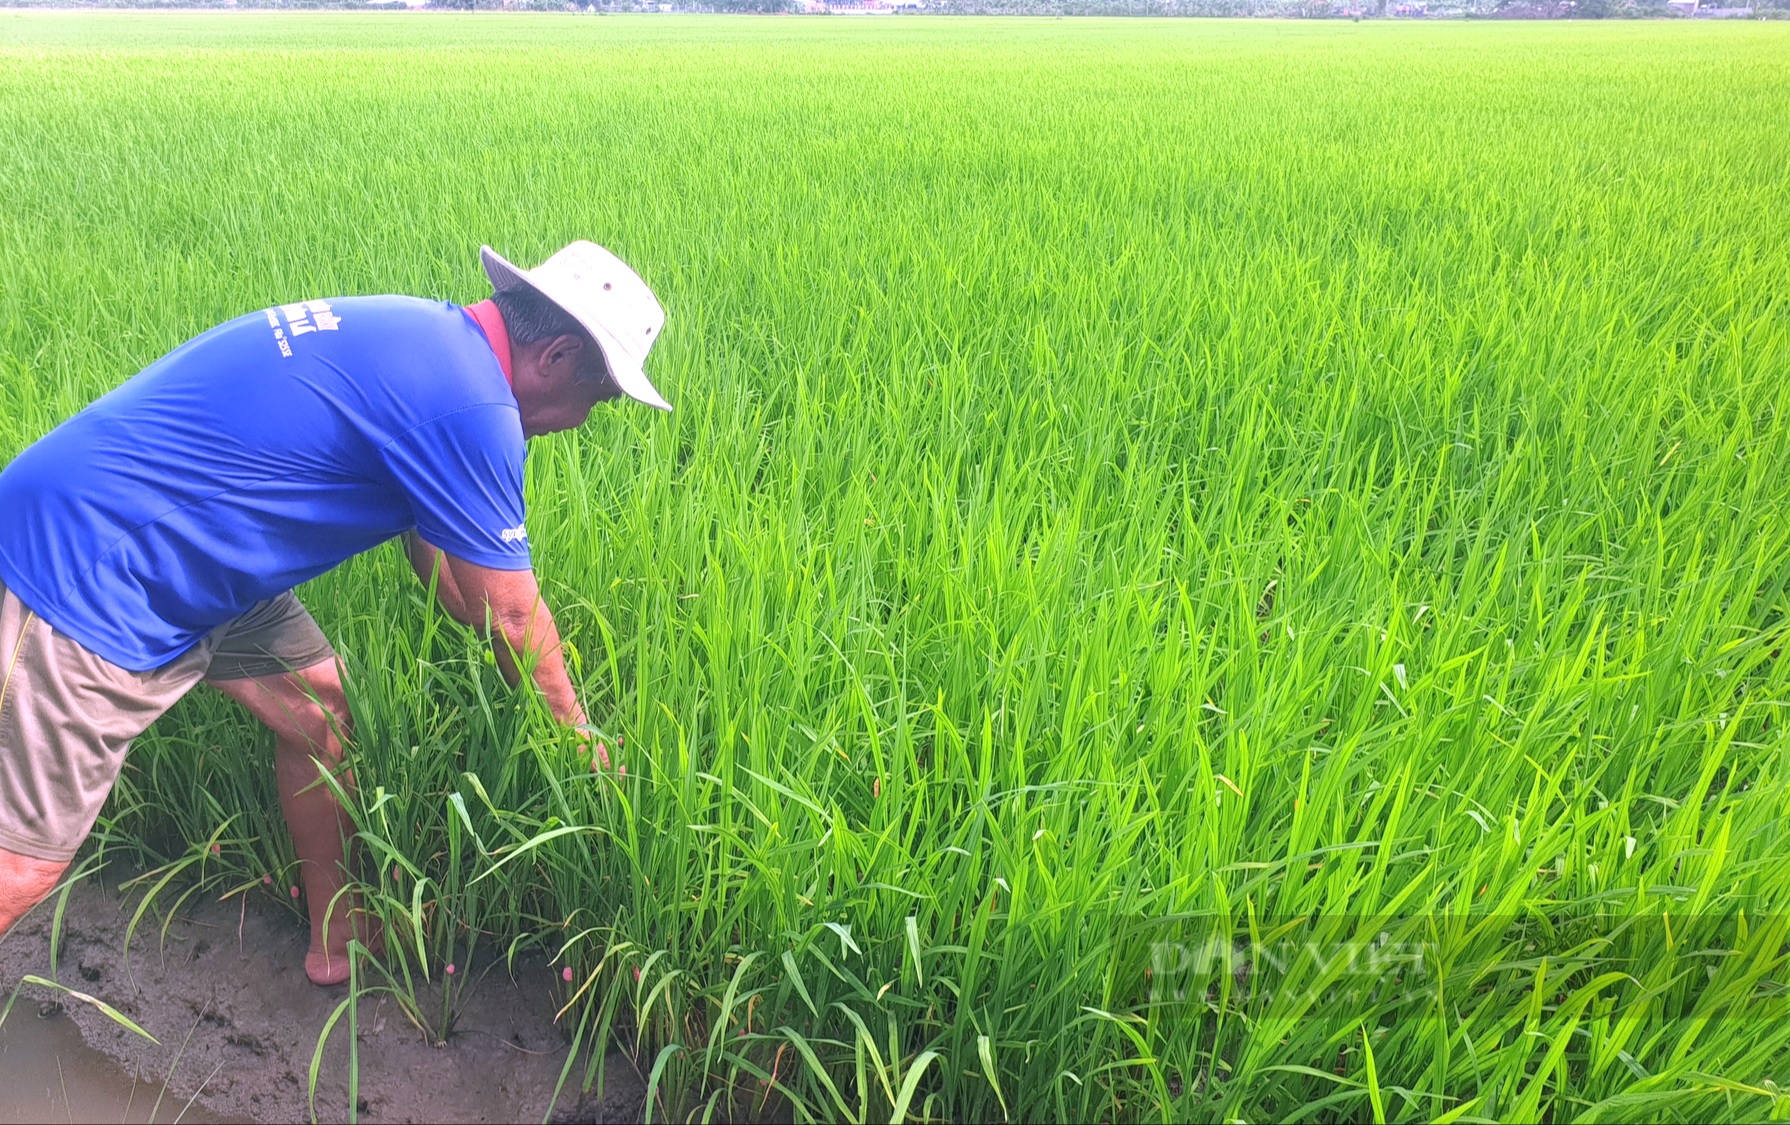 Nhìn lại diễn biến thị trường lúa gạo: Cơ hội nào cho gạo Việt, vì sao người trồng lúa thu nhập vẫn thấp? (Bài 2) - Ảnh 4.